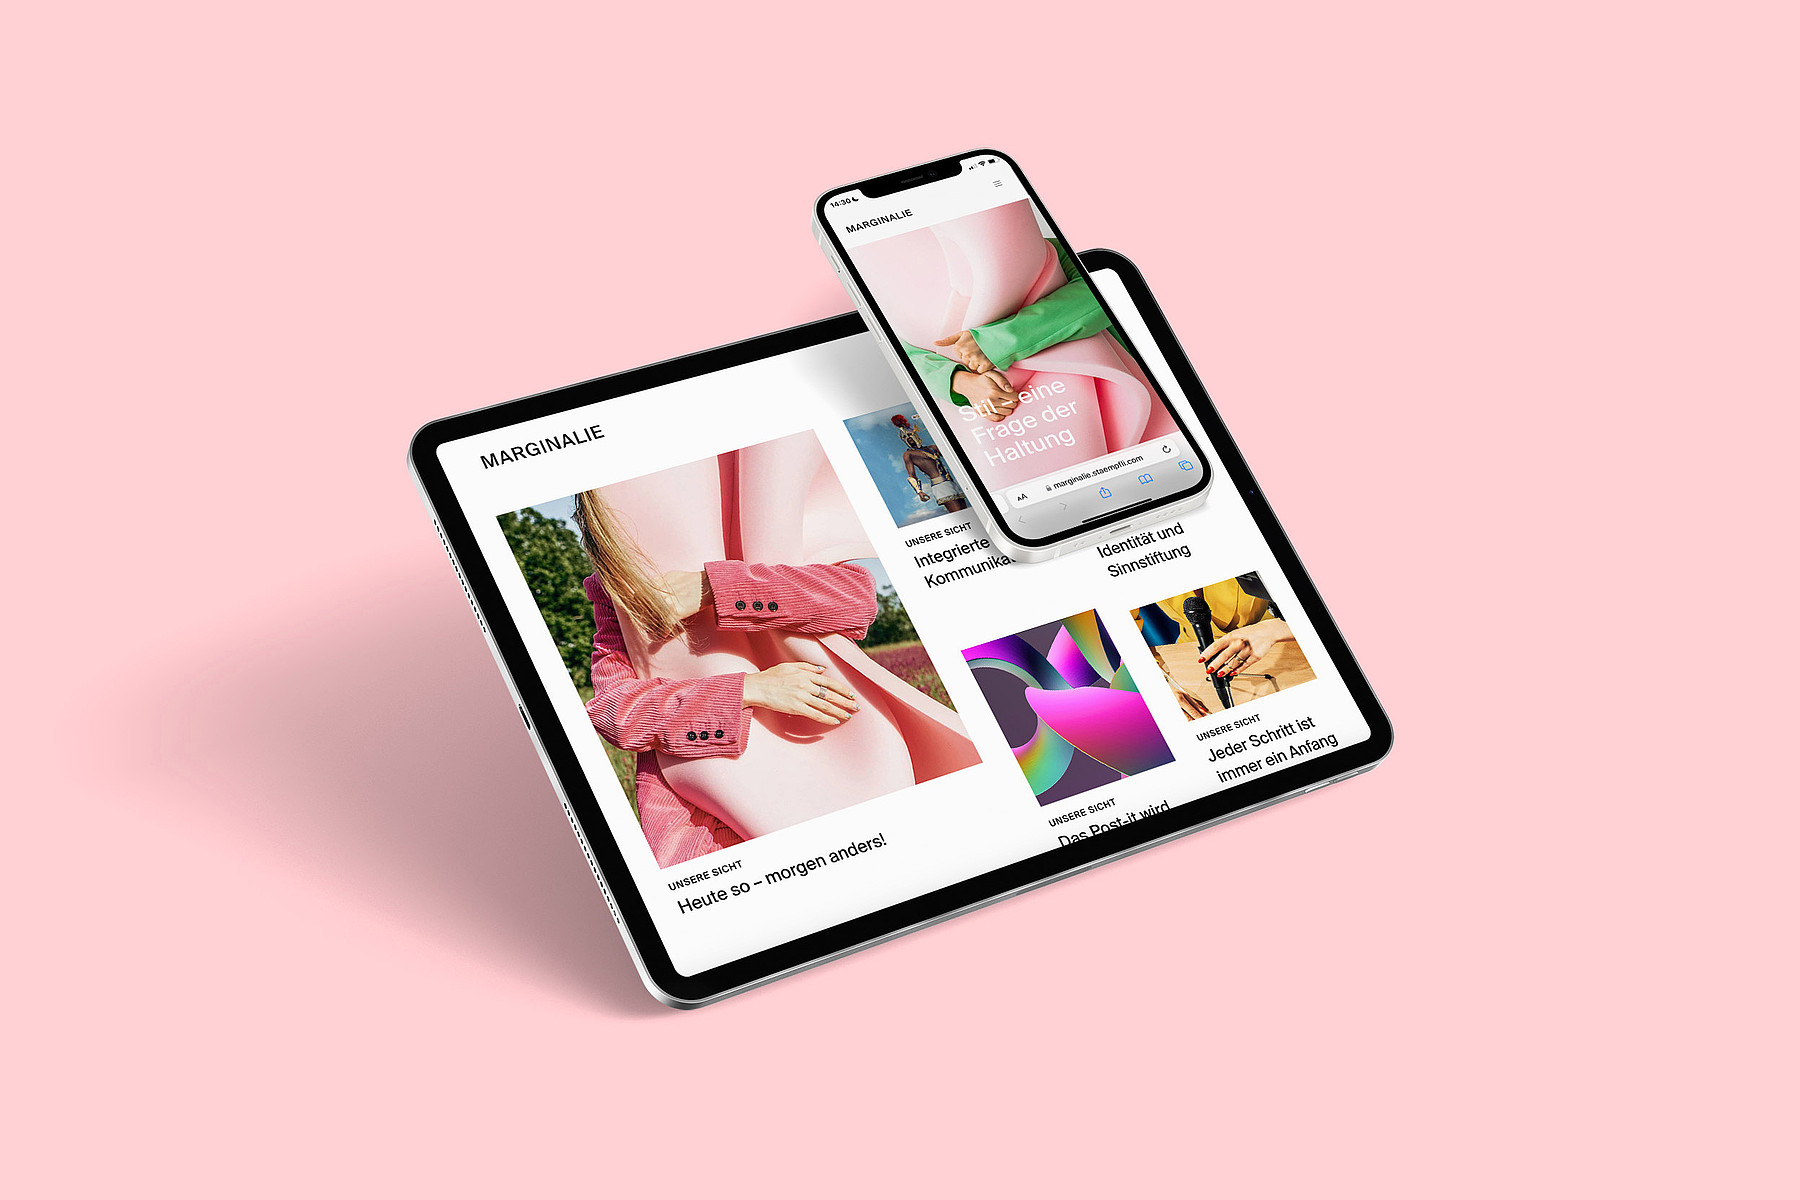 Exemple de webmagazine : « Marginalie » – le magazine interne de Stämpfli Communication – sur smartphone et tablette